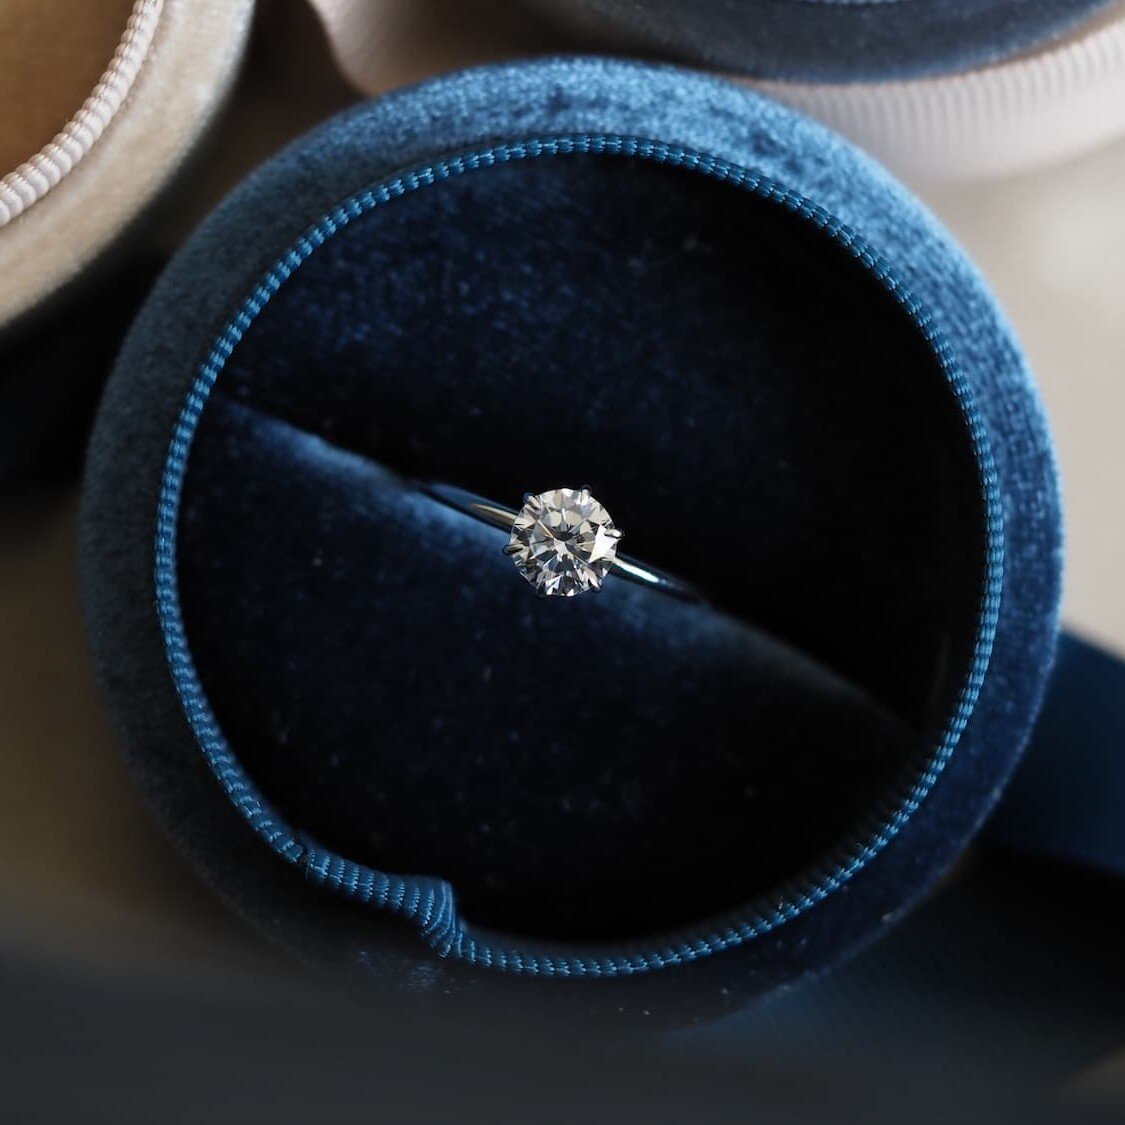 Zara 1ct soliatire diamond ring